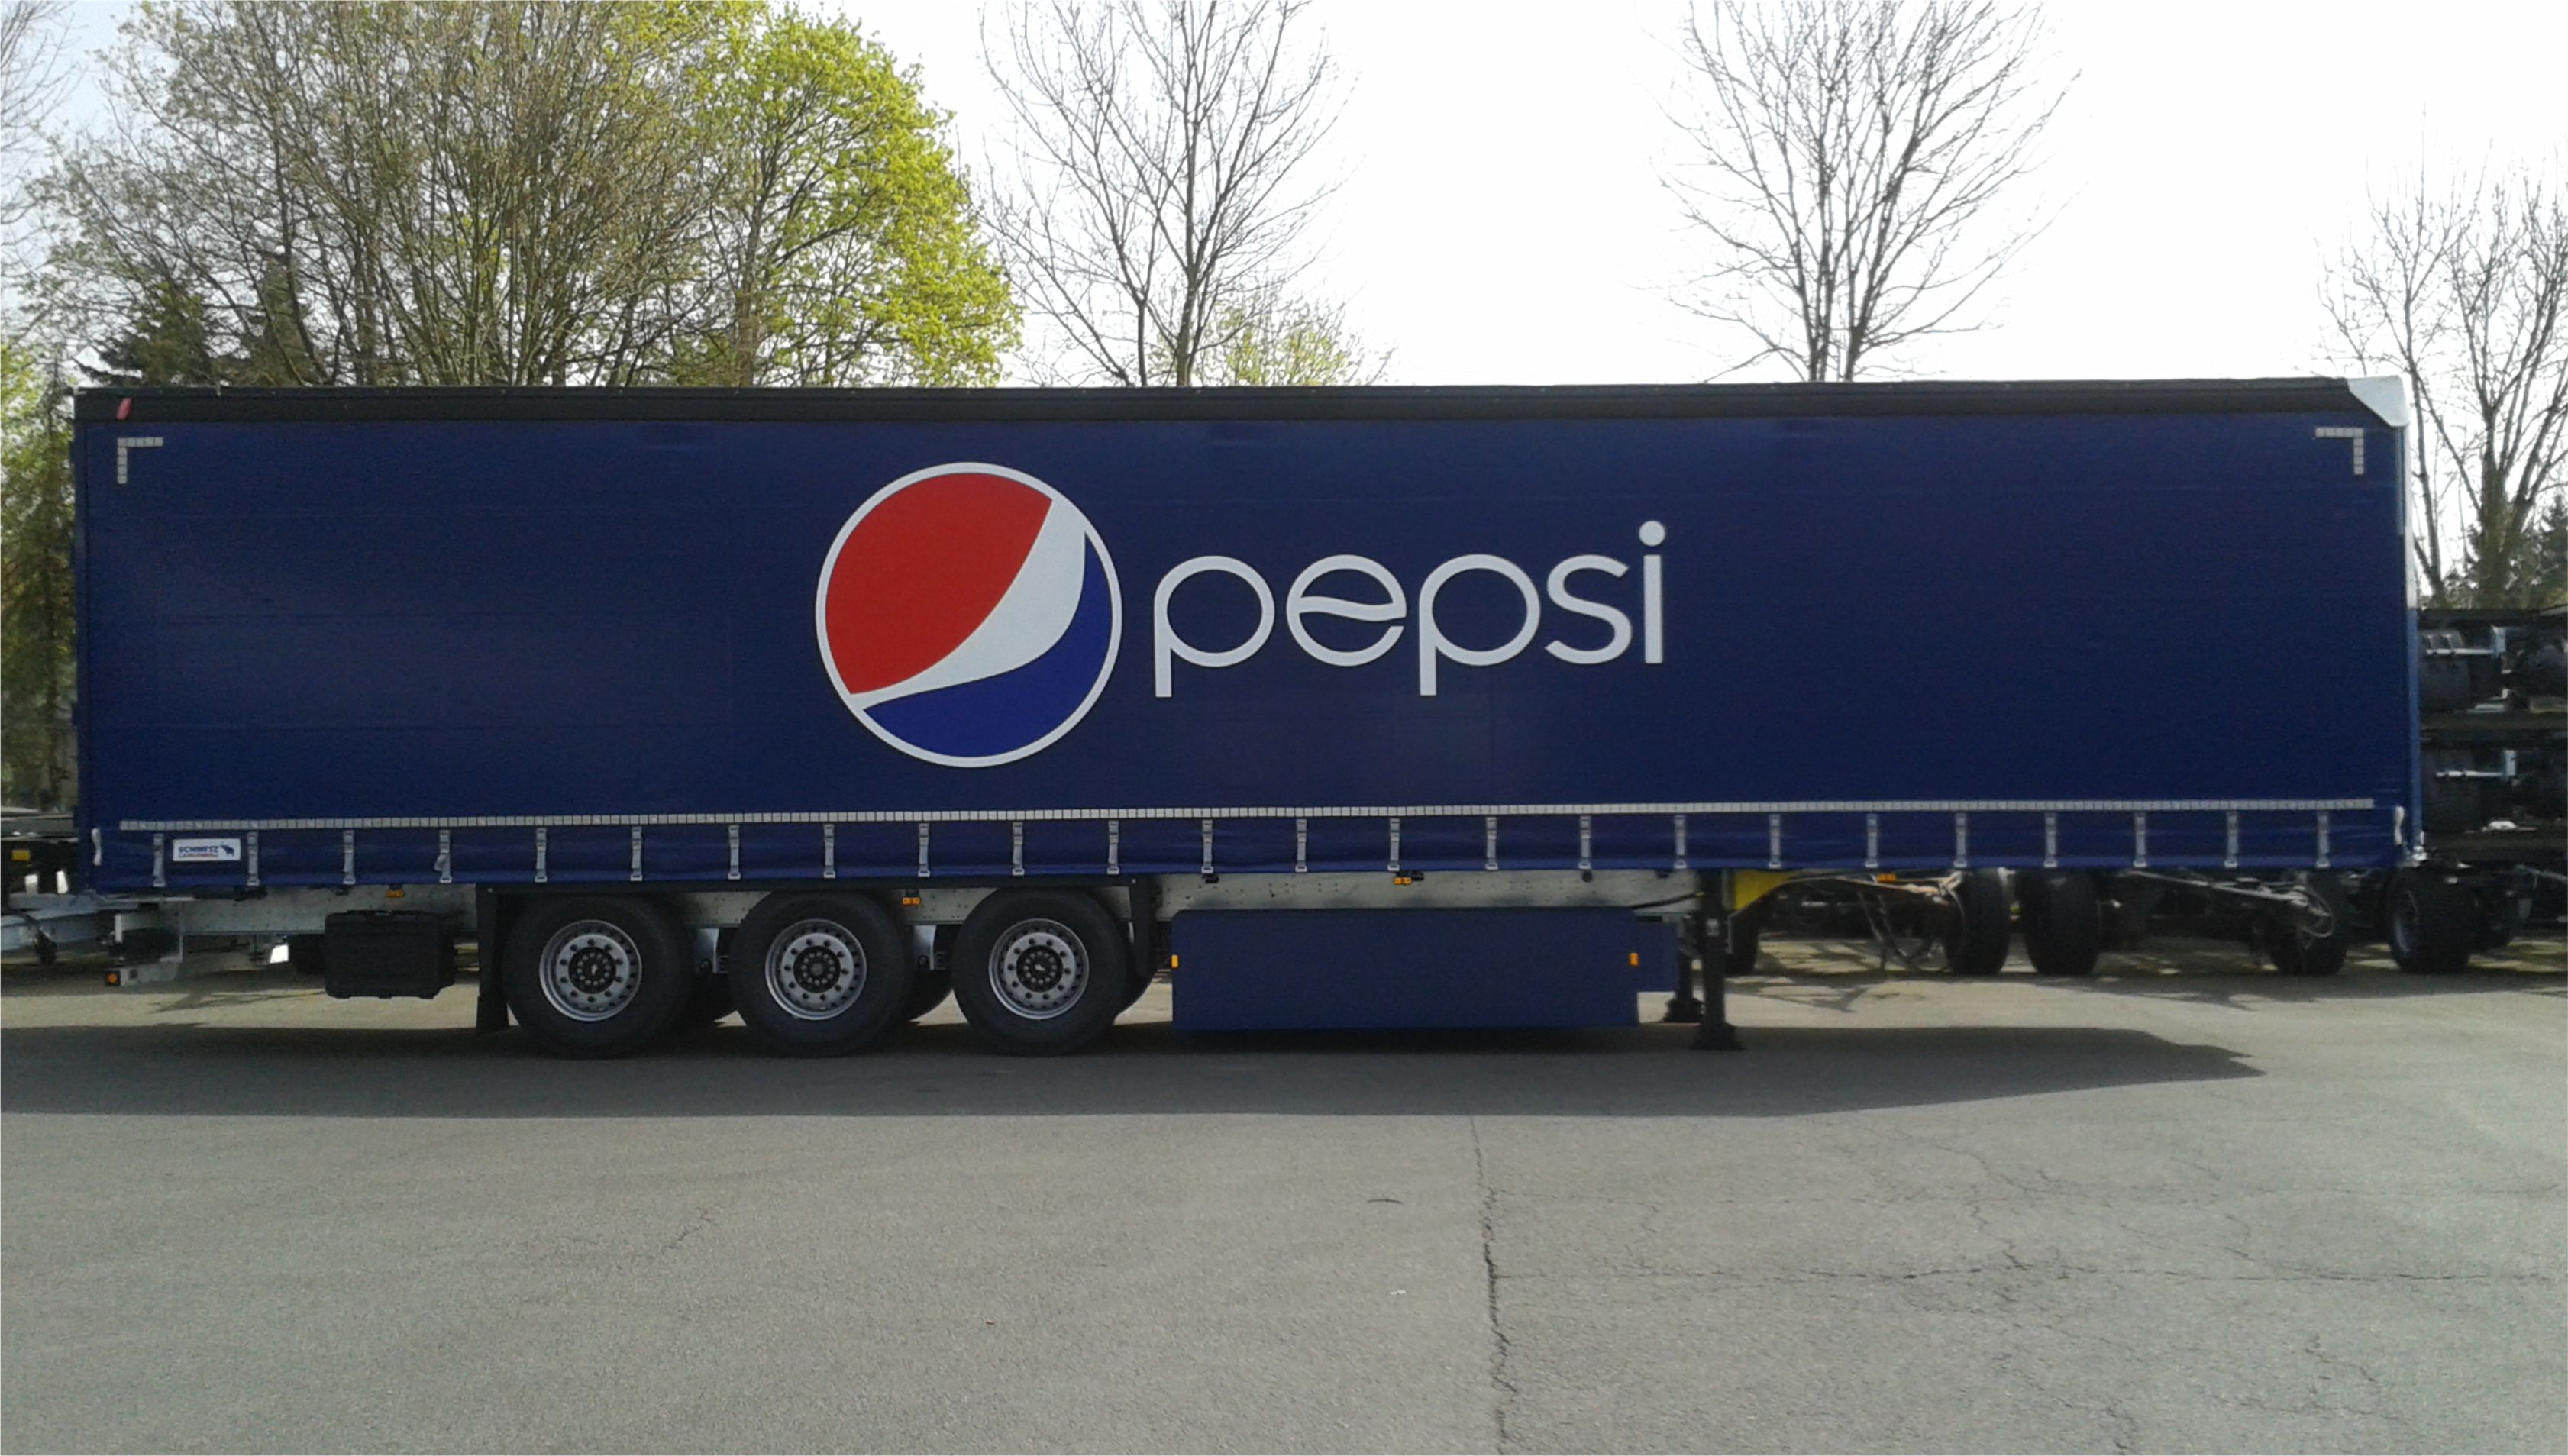 Pepsi1.jpg